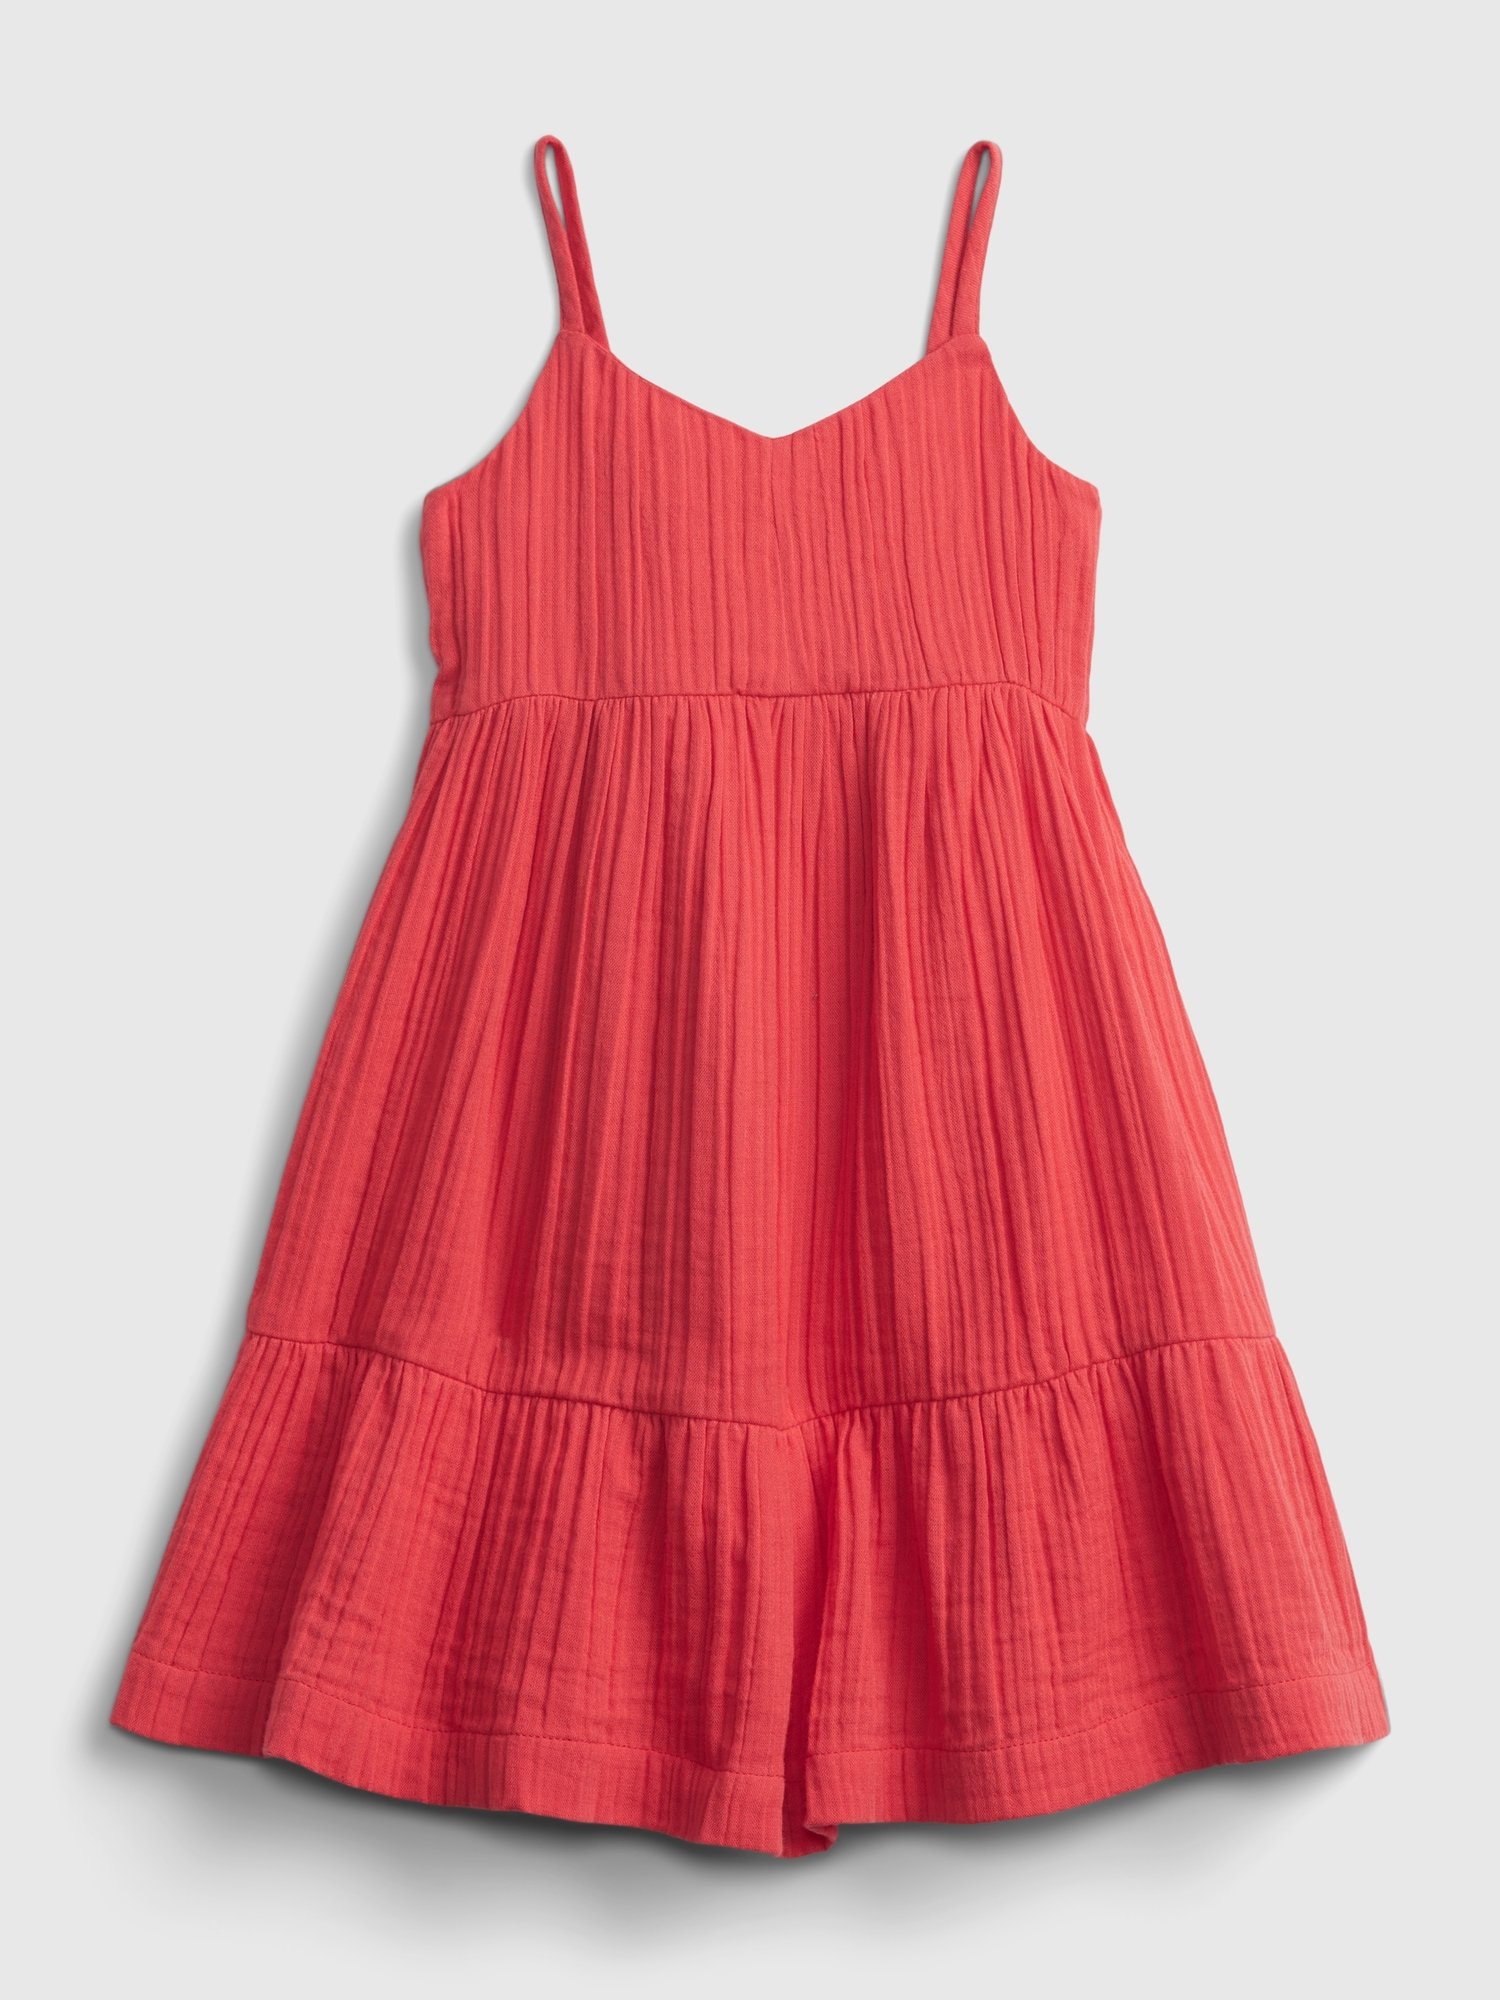 Fotografie Červené holčičí dětské šaty strappy tank dress